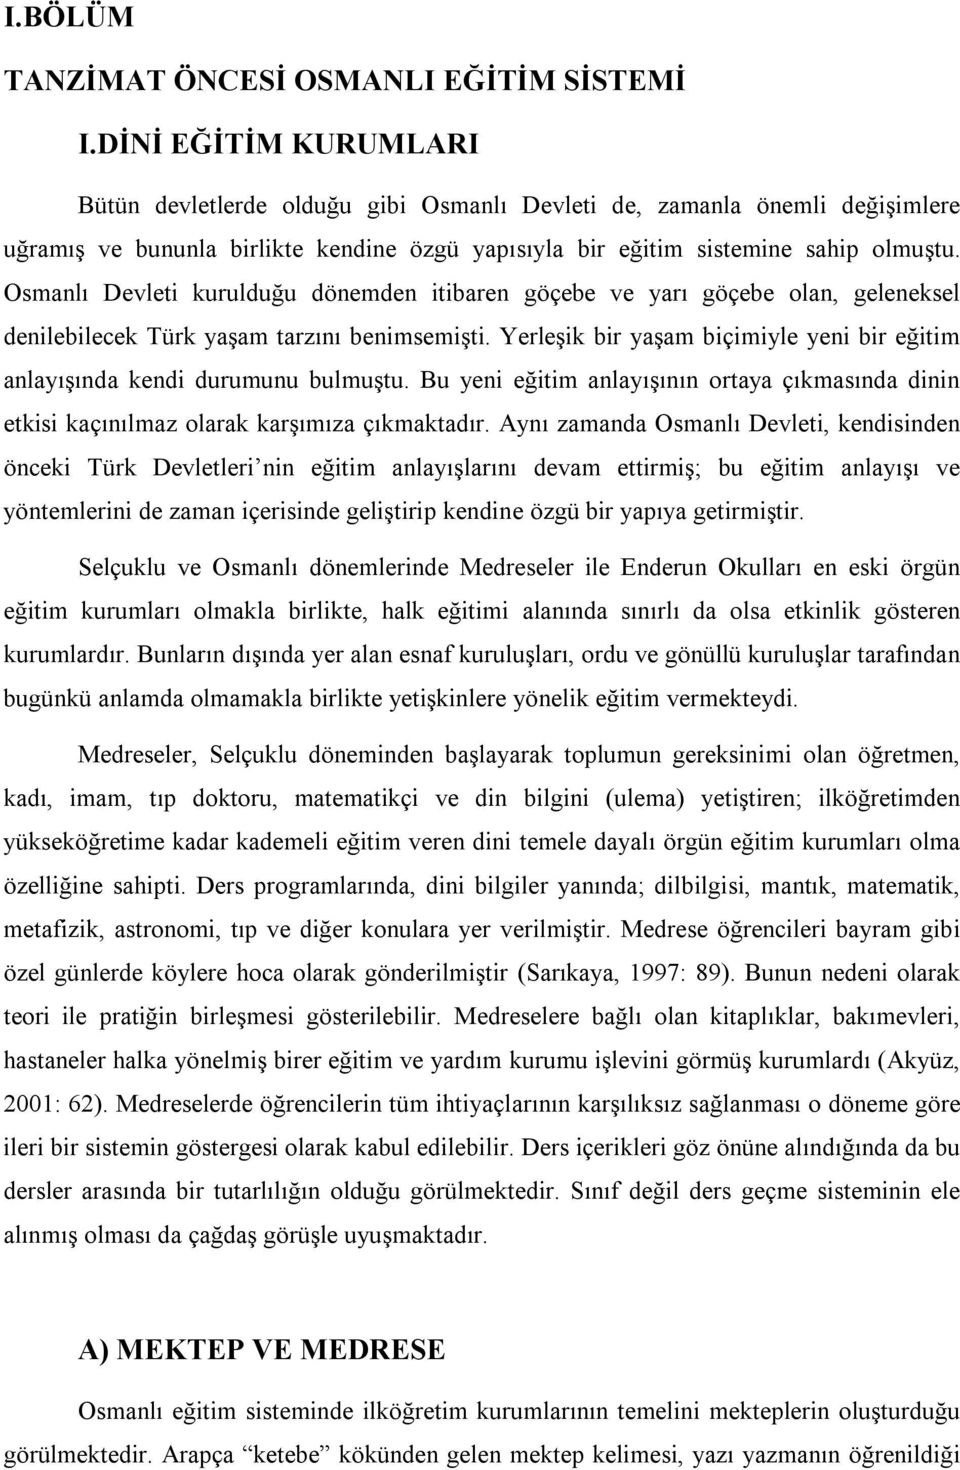 Osmanlı Devleti kurulduğu dönemden itibaren göçebe ve yarı göçebe olan, geleneksel denilebilecek Türk yaşam tarzını benimsemişti.